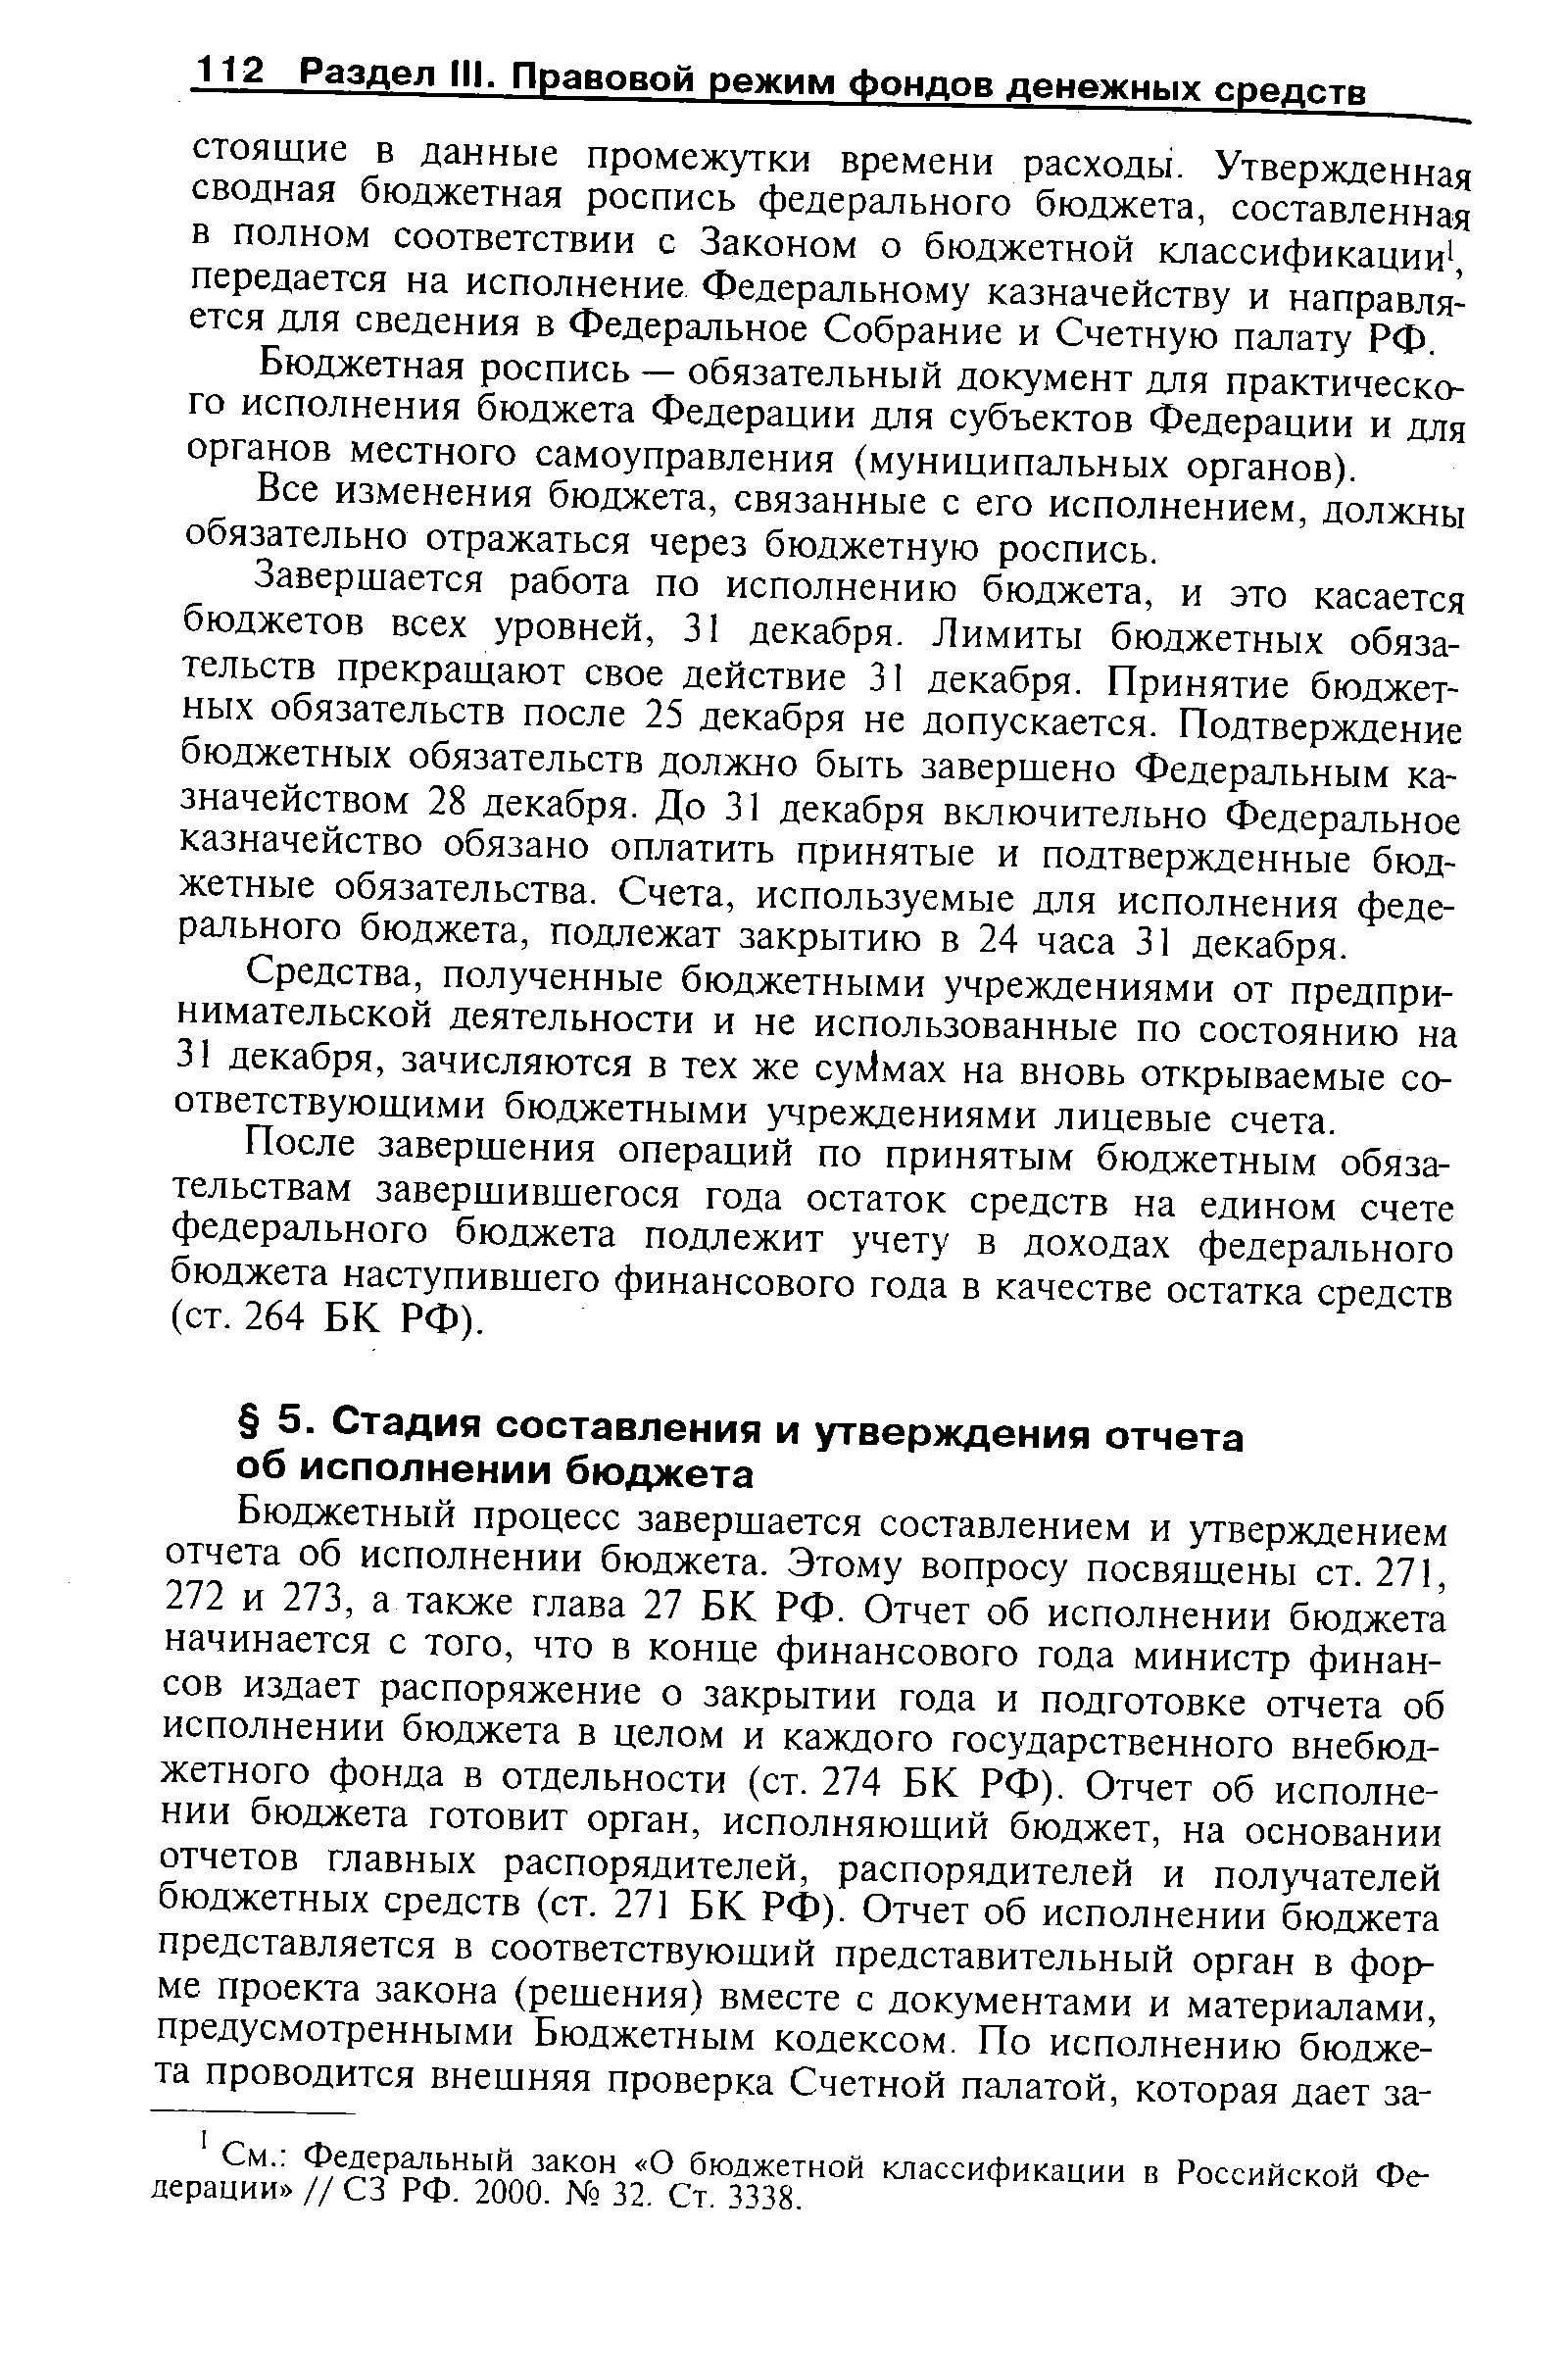 Федеральный закон О бюджетной классификации в Российской Федерации // СЗ РФ. 2000. 32. Ст. 3338.
